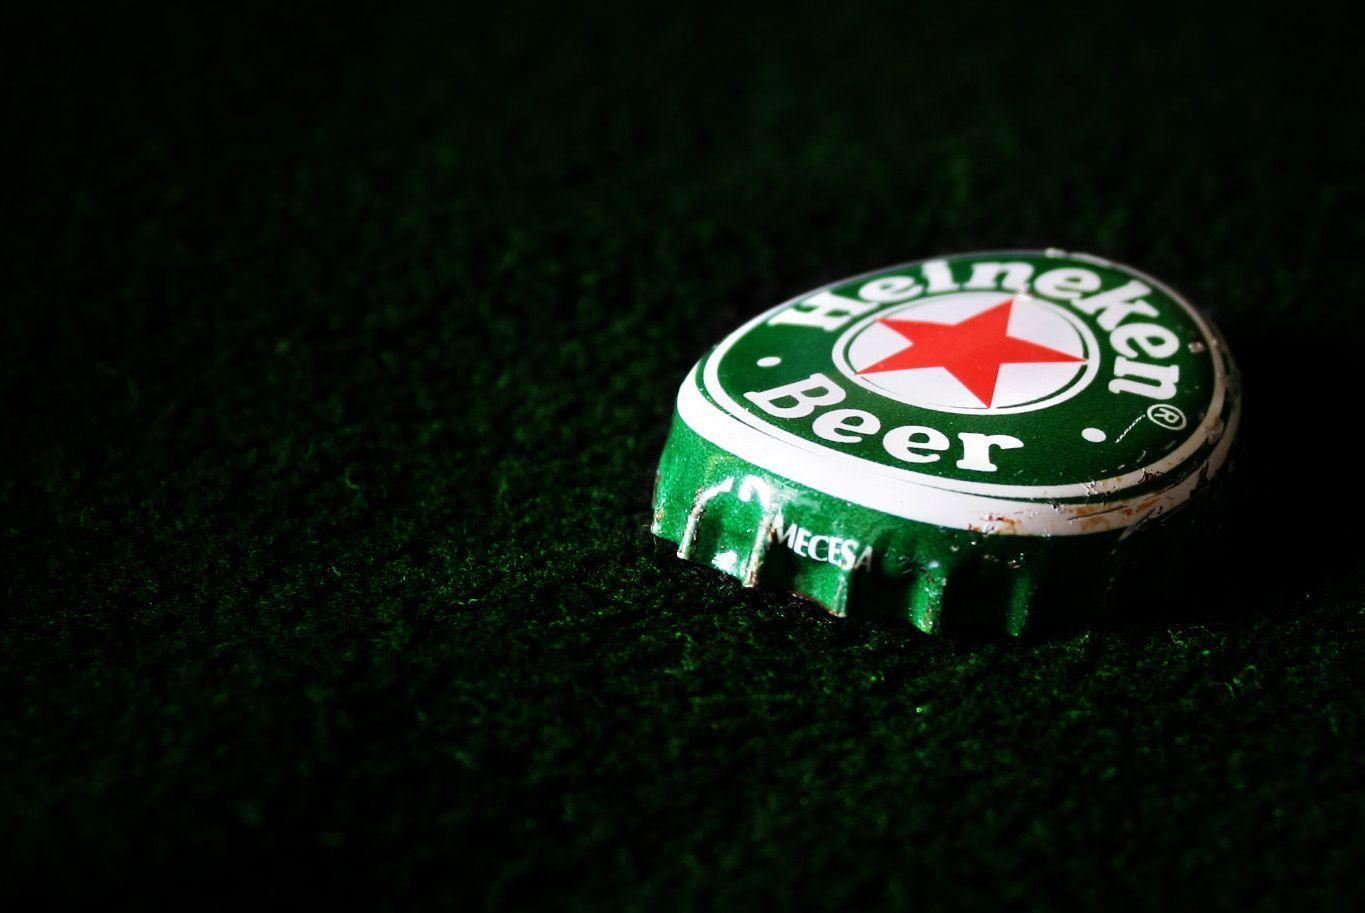 Download wallpaper: Heineken, wallpaper, beer, photo, wallpapers